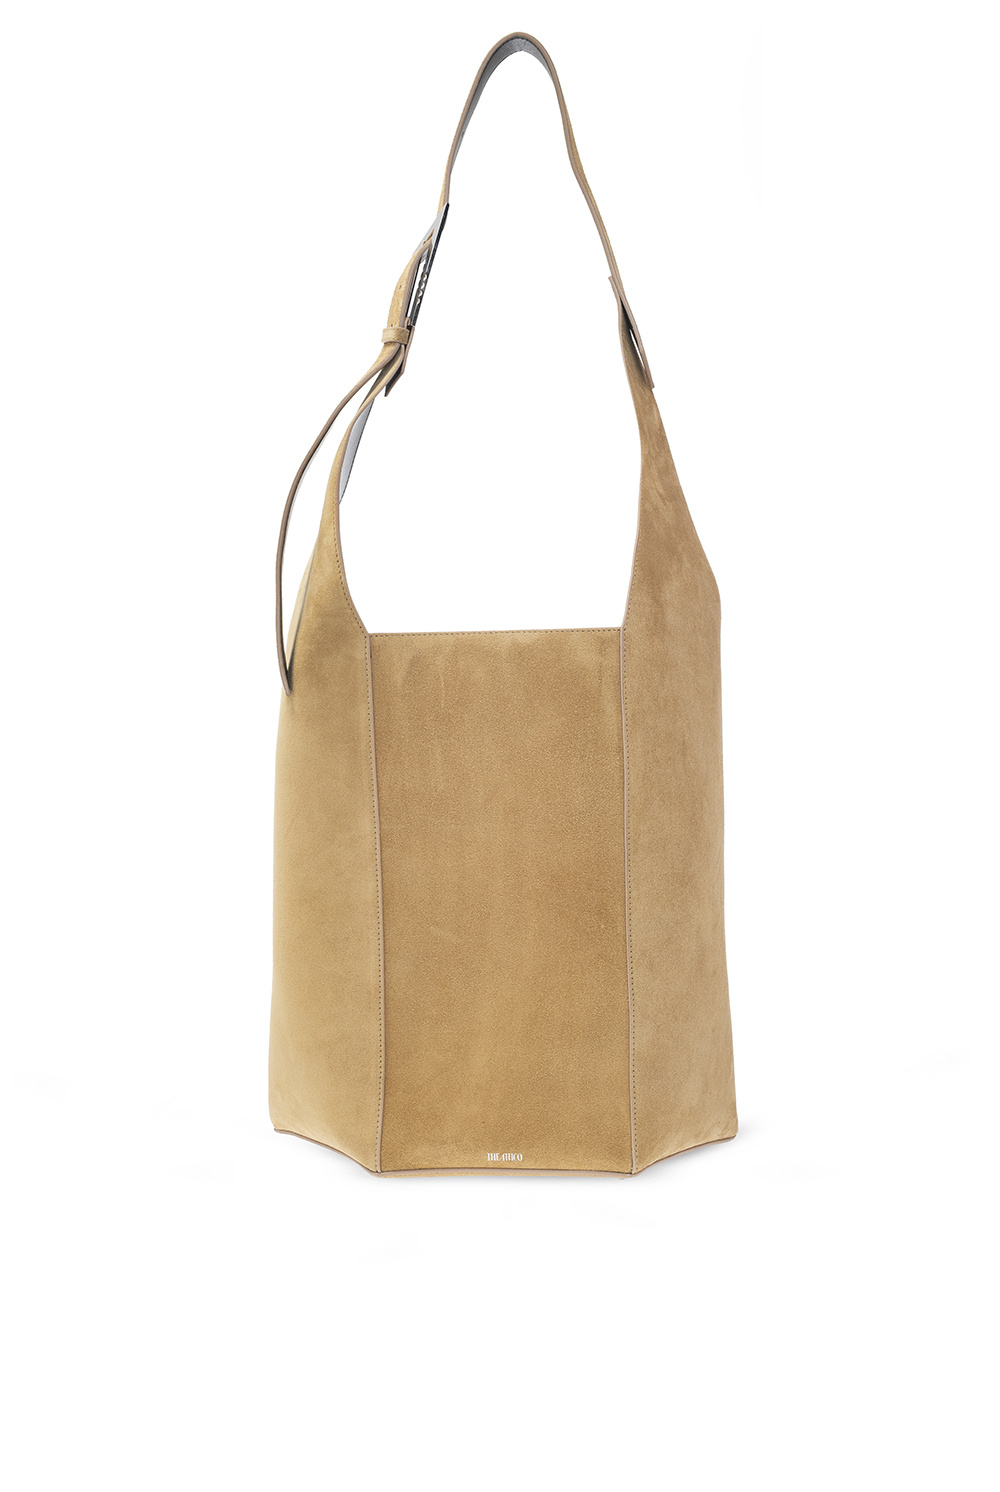 The Attico ‘12PM’ shopper Loubishore bag